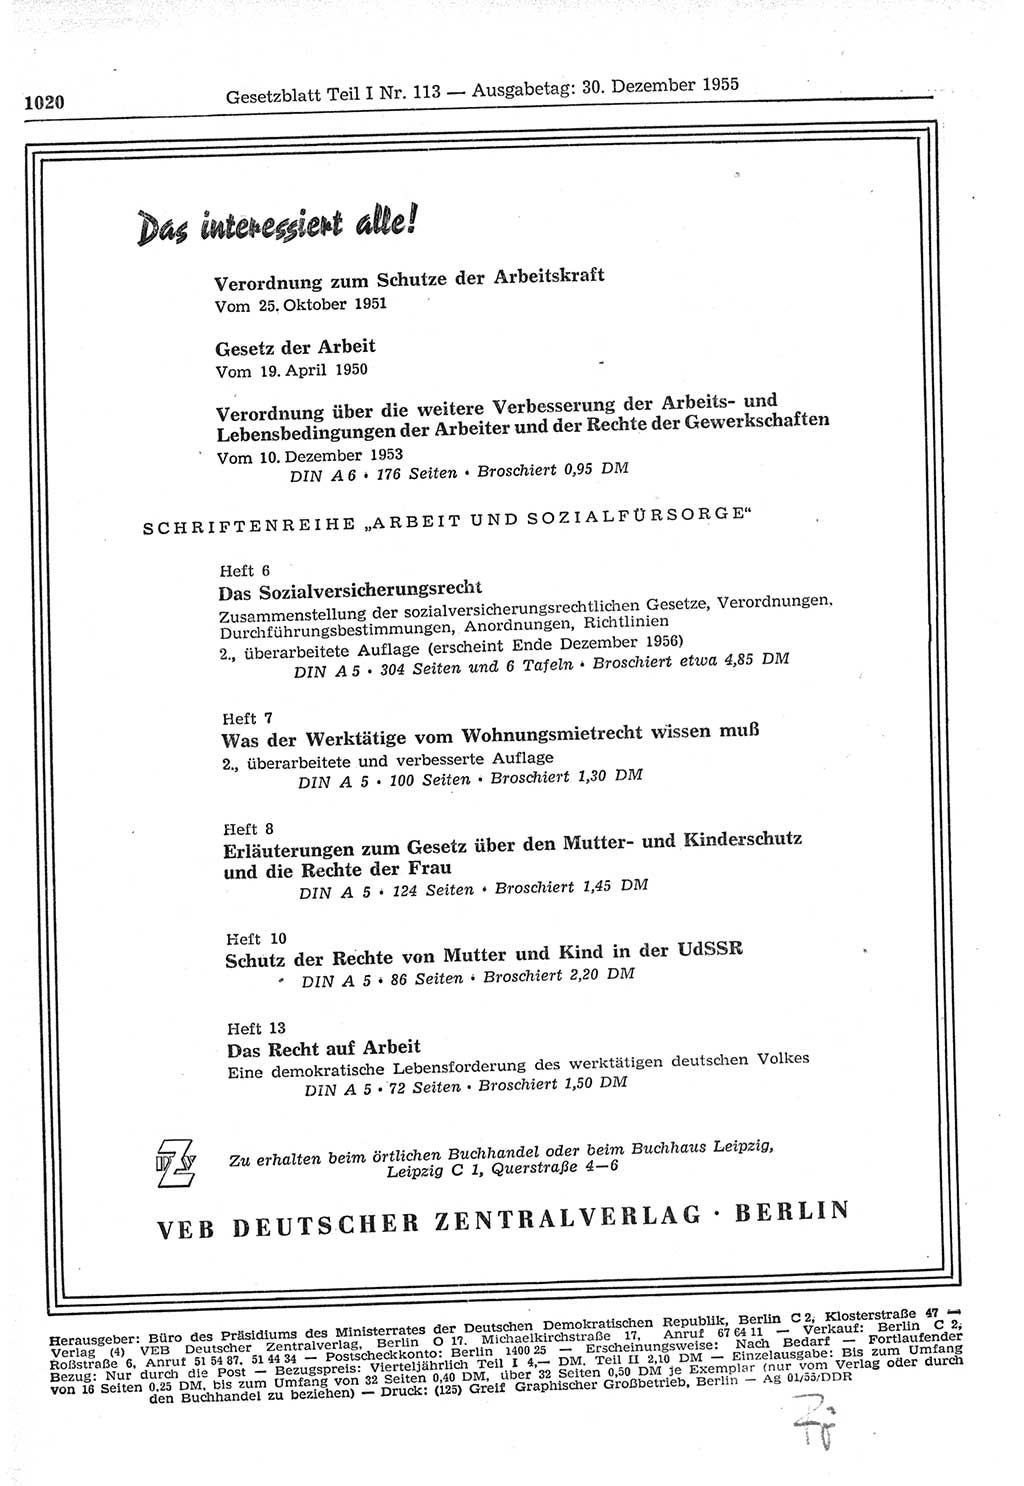 Gesetzblatt (GBl.) der Deutschen Demokratischen Republik (DDR) Teil Ⅰ 1955, Seite 1020 (GBl. DDR Ⅰ 1955, S. 1020)